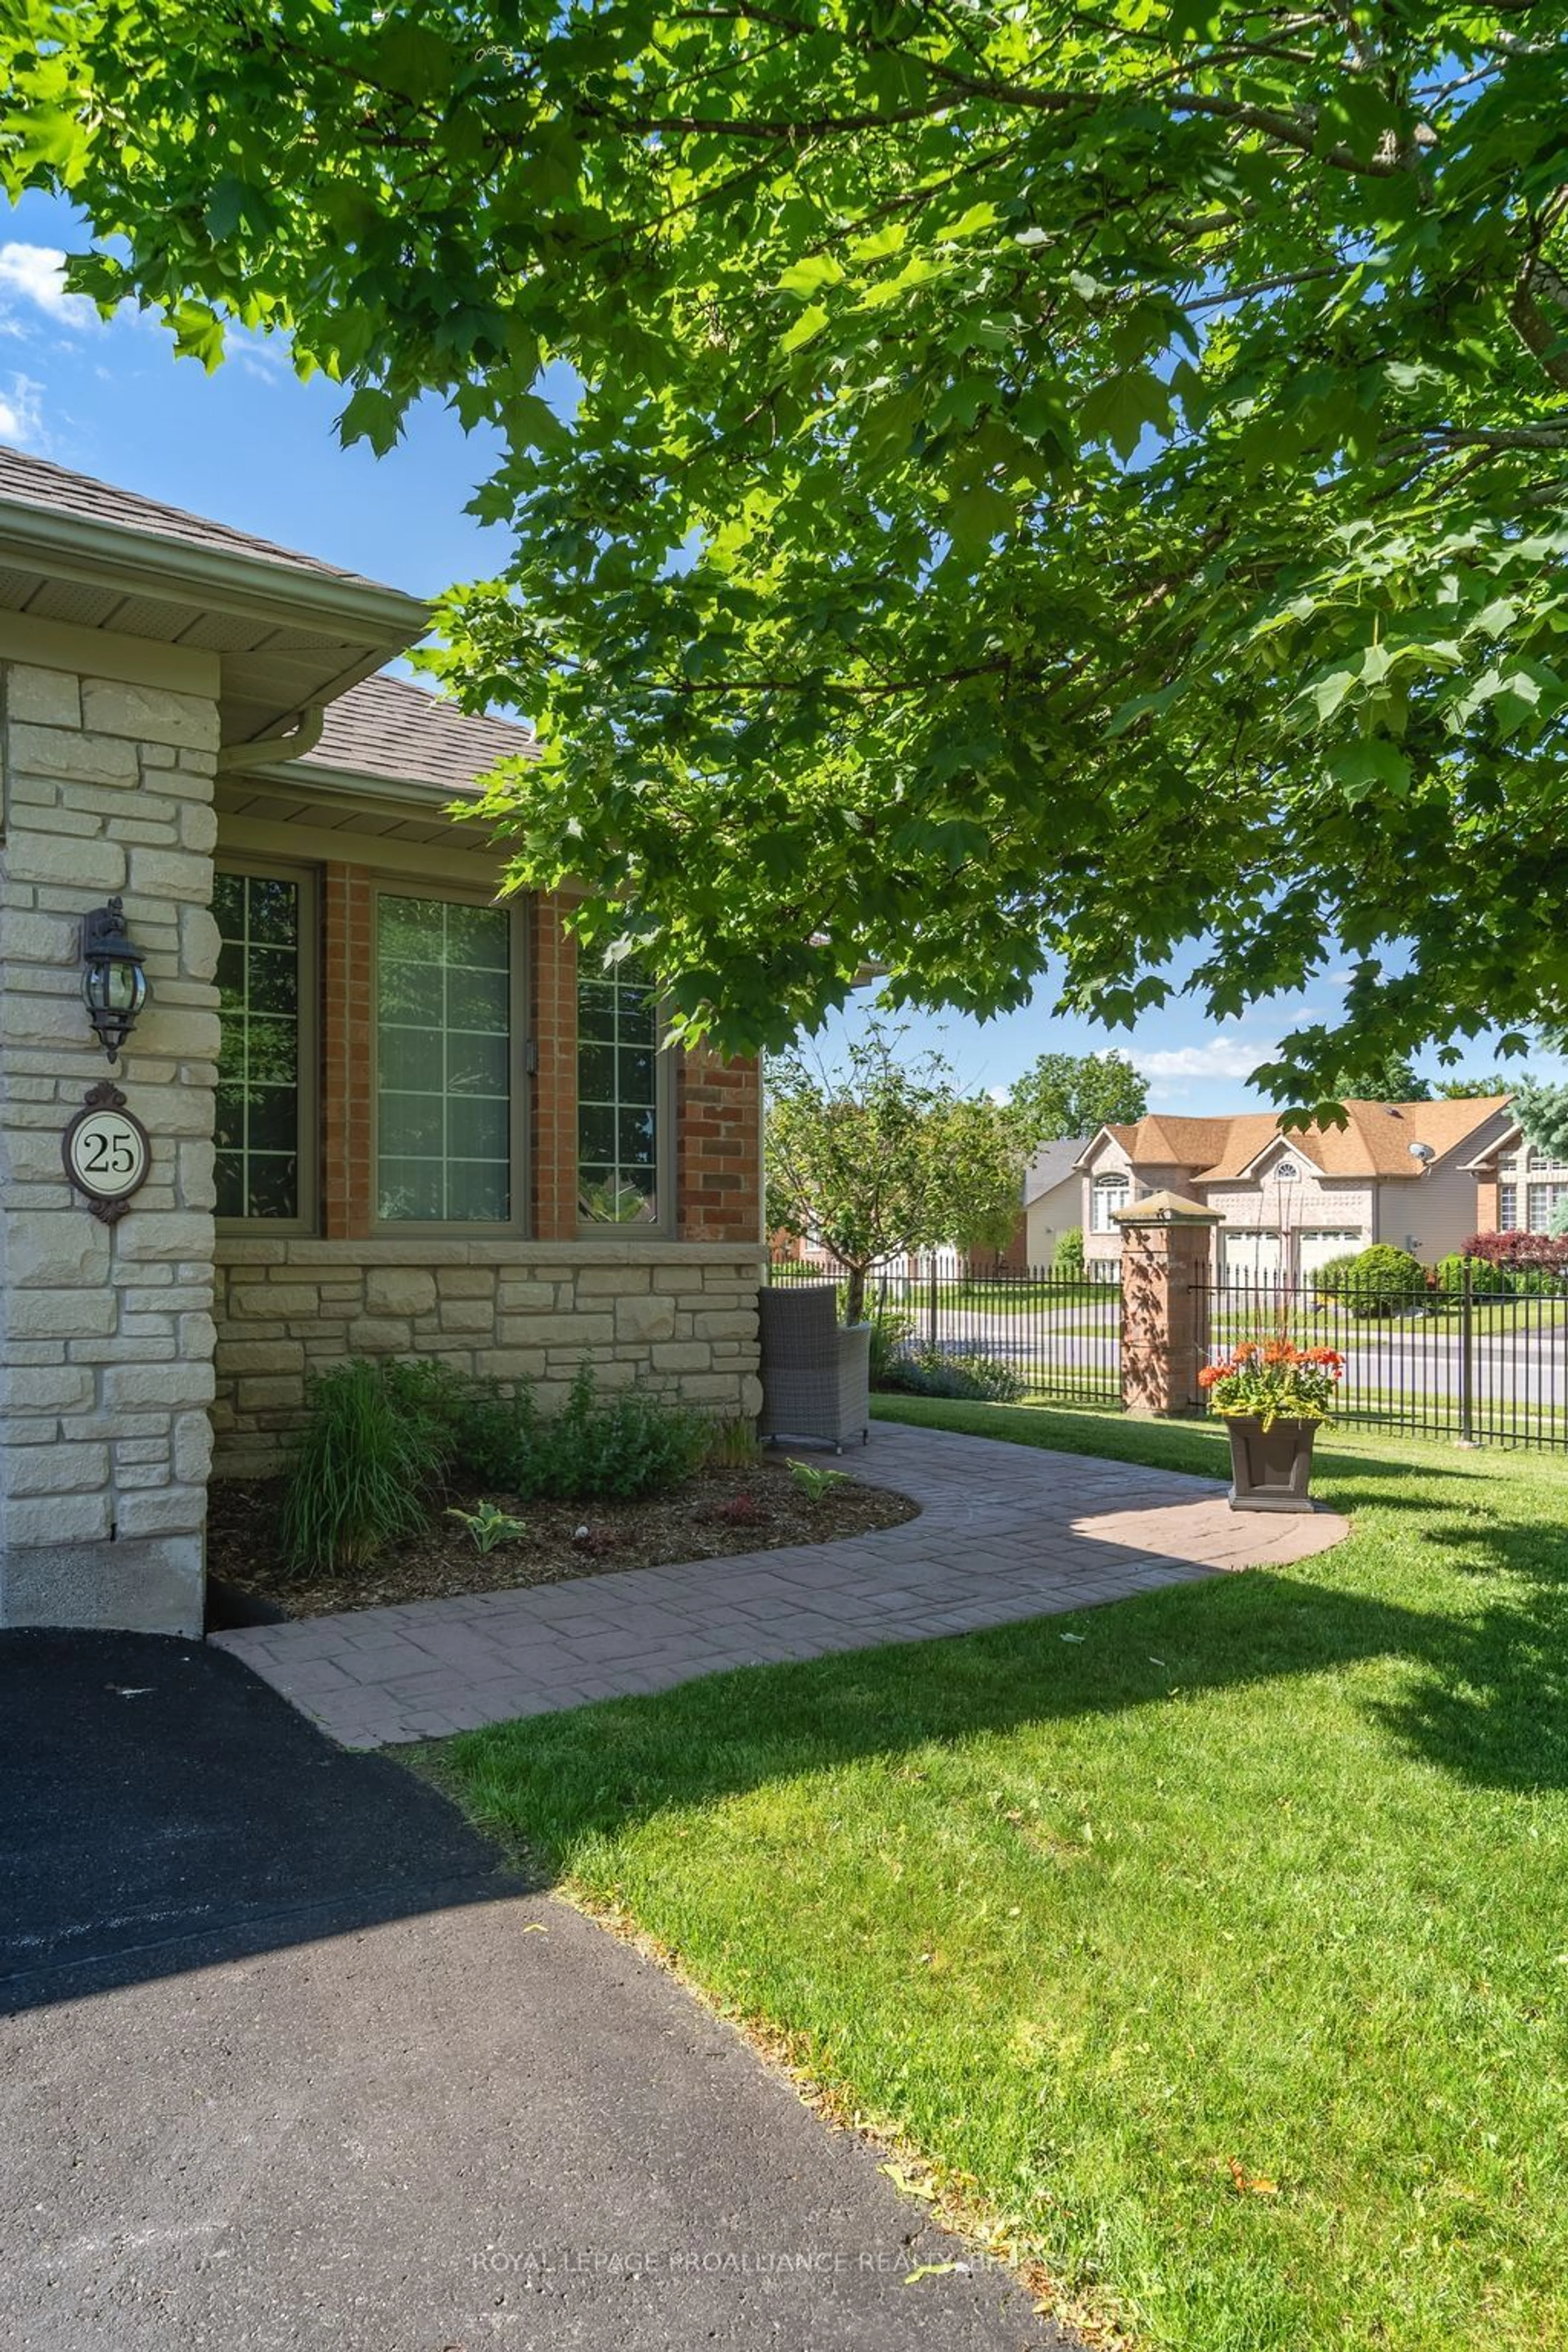 Frontside or backside of a home for 35 Heartwood Dr #25, Belleville Ontario K8P 2H9